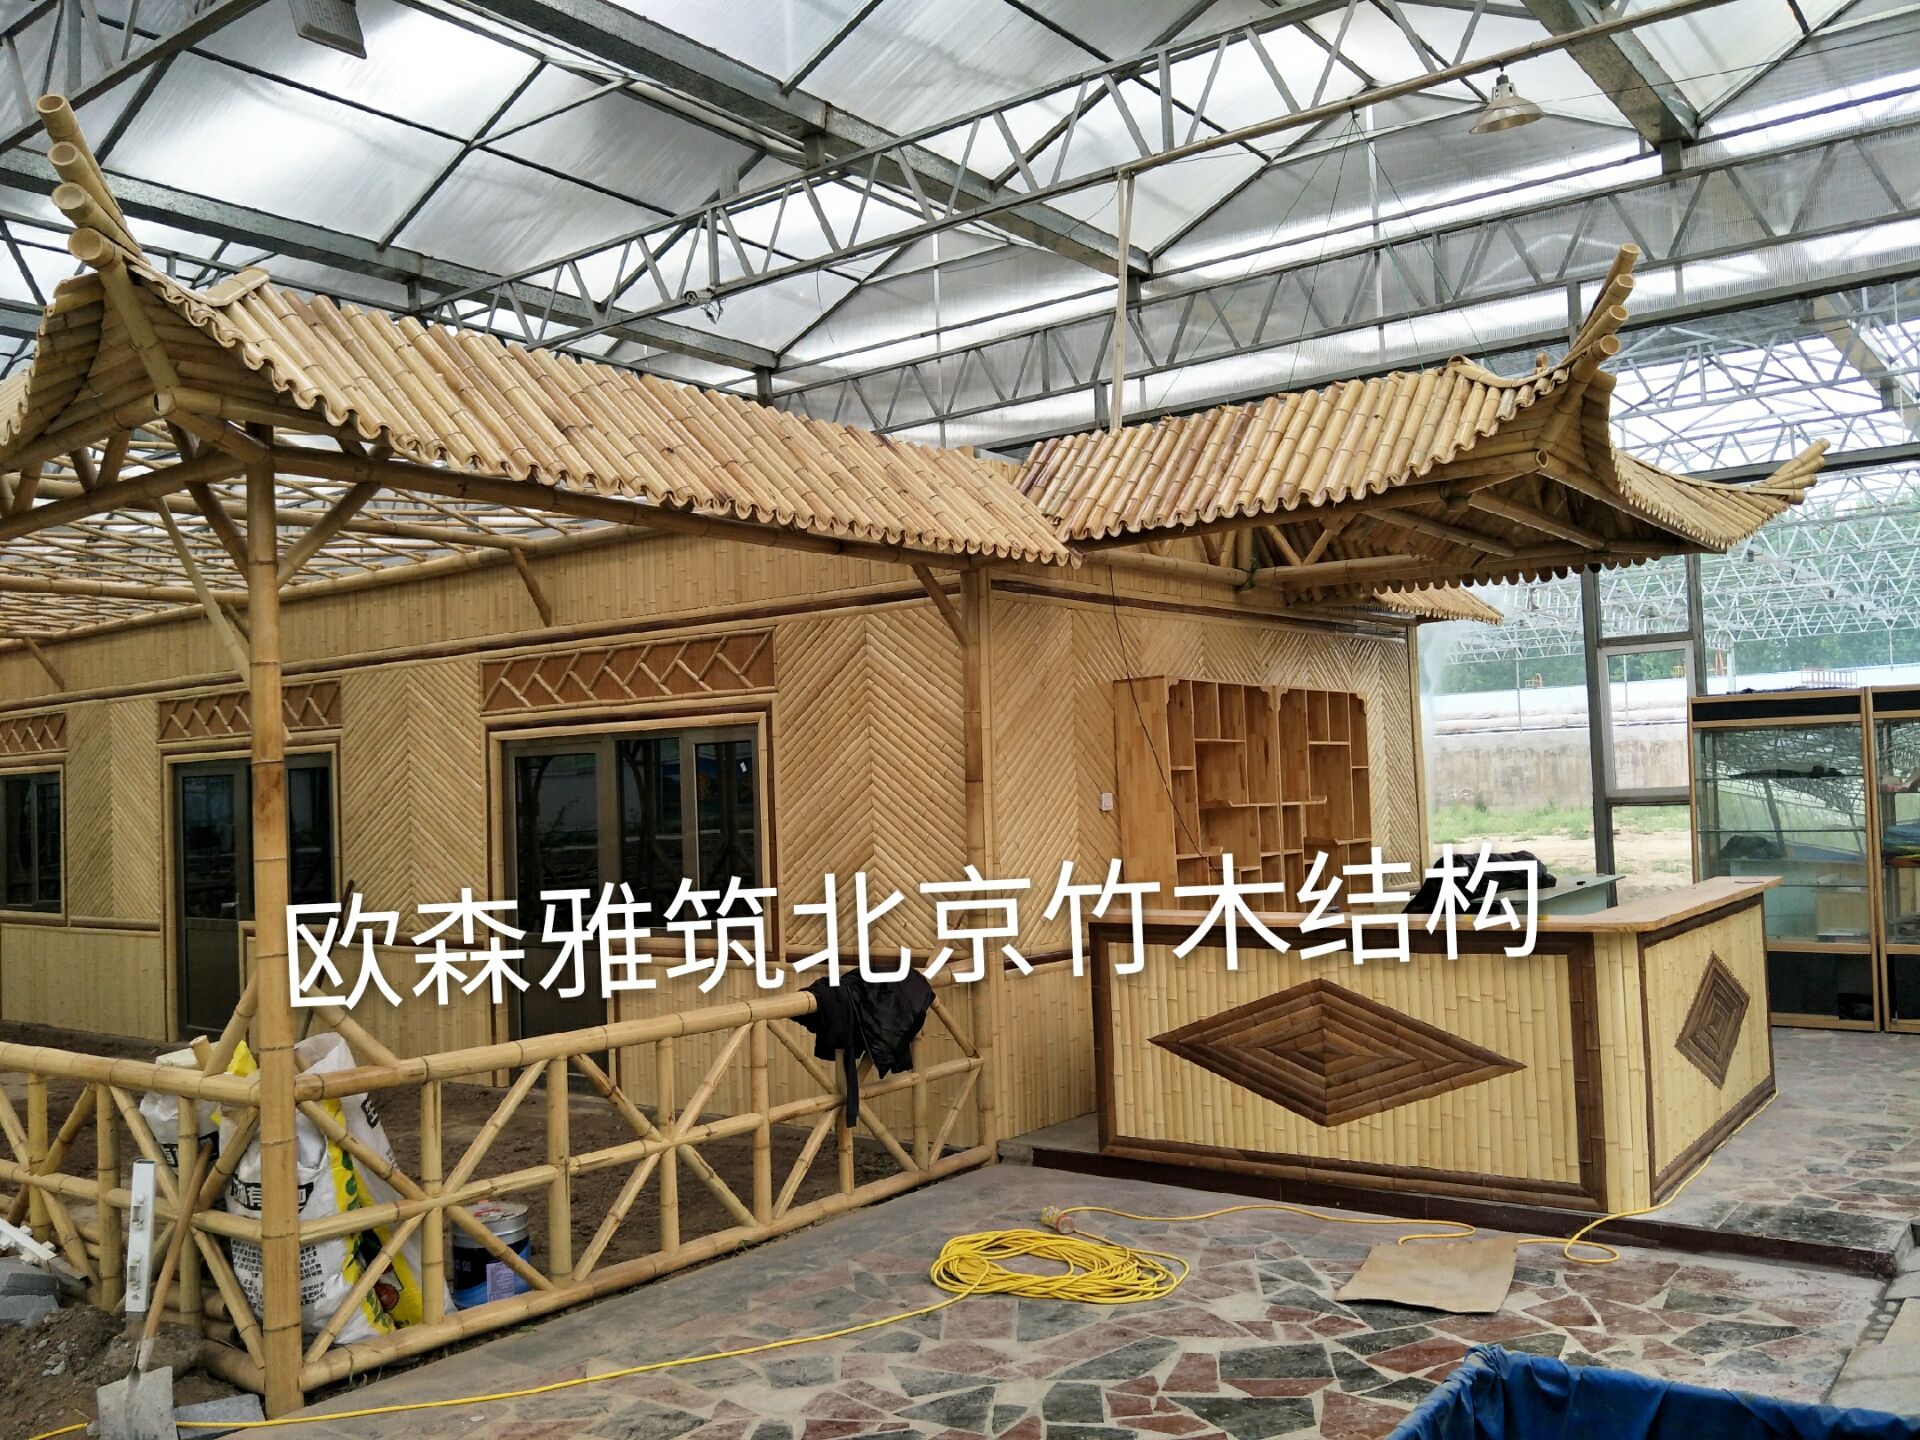 建造竹屋，竹房子，竹别墅，竹楼，竹门楼，竹长廊，竹亭子，竹篱笆，